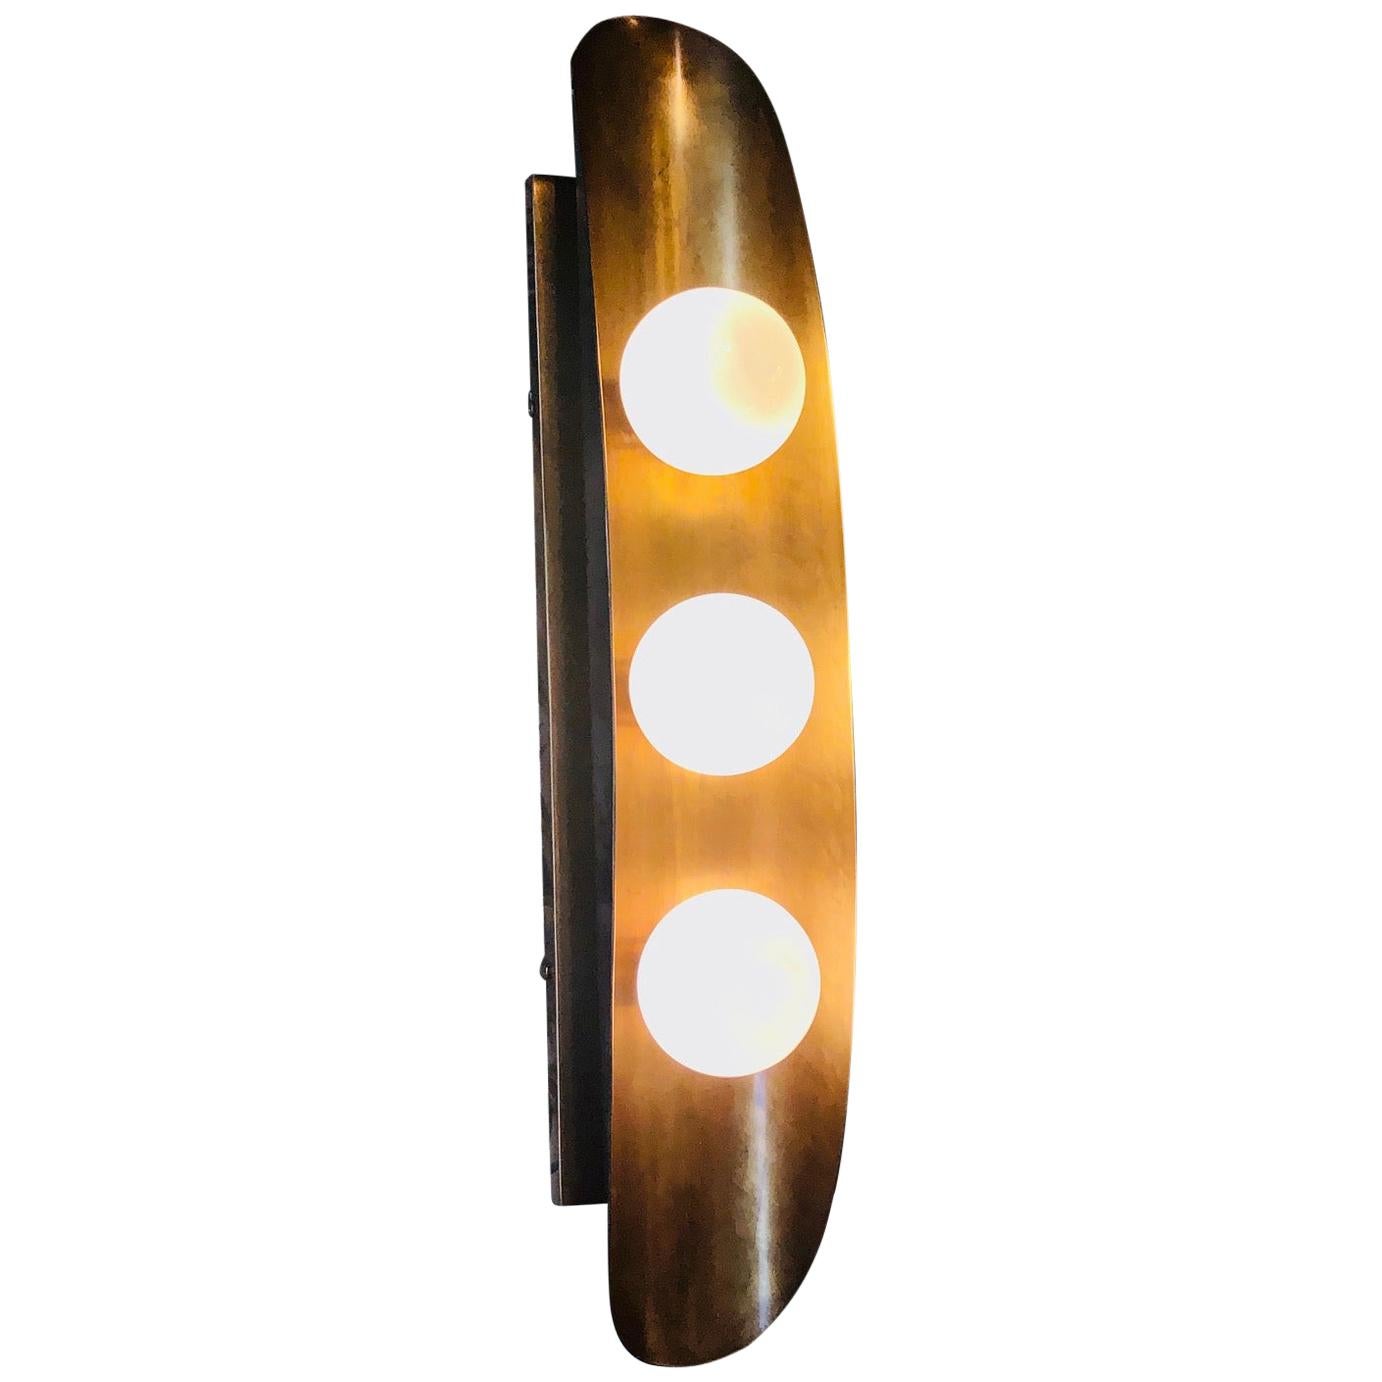 Hopper 3-Bulb Sconce Light Fixture by Martyn Lawrence Bullard For Sale